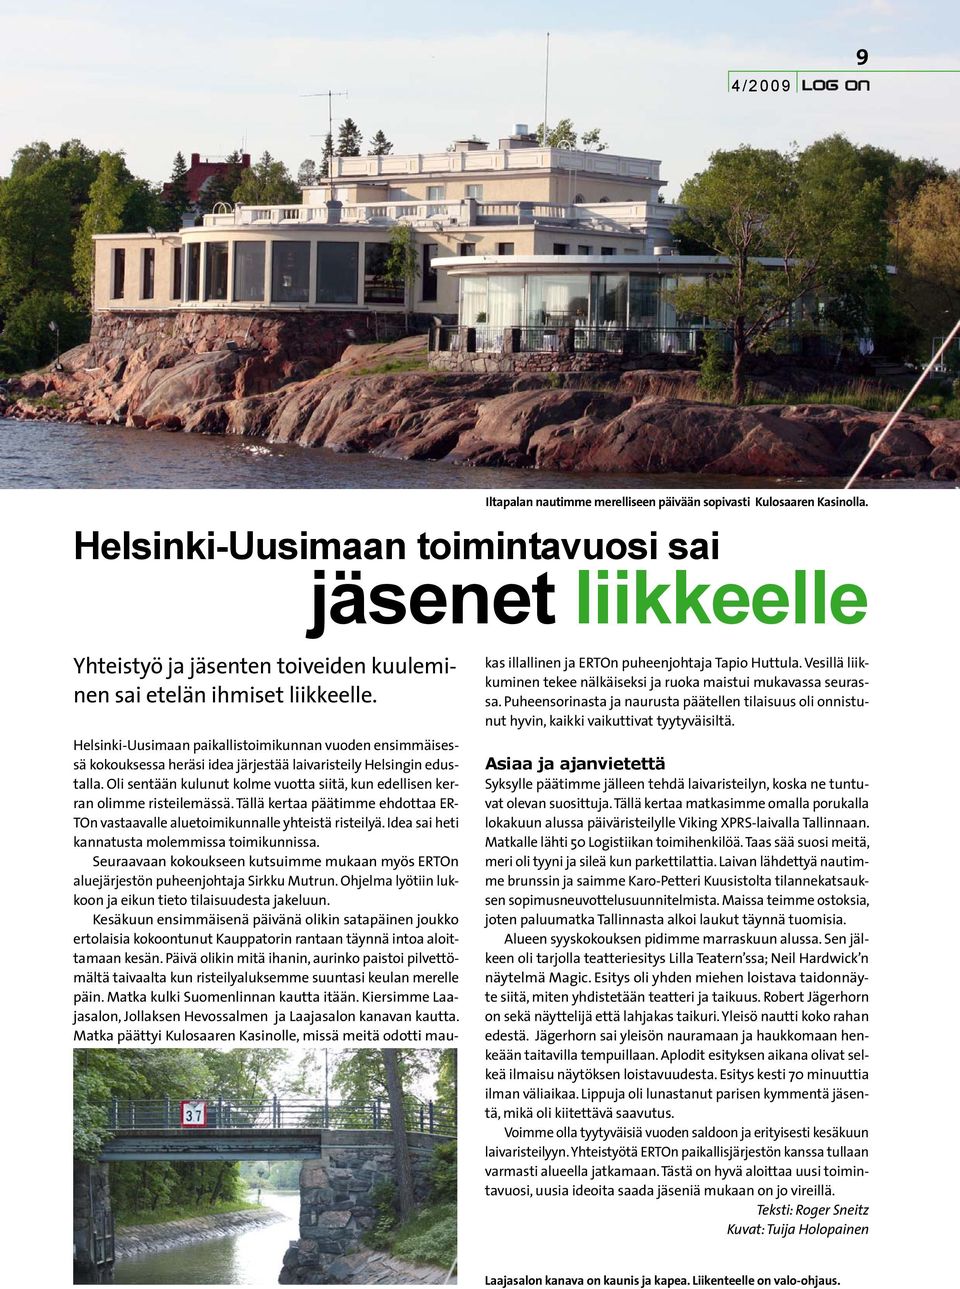 Helsinki-Uusimaan paikallistoimikunnan vuoden ensimmäisessä kokouksessa heräsi idea järjestää laivaristeily Helsingin edustalla.